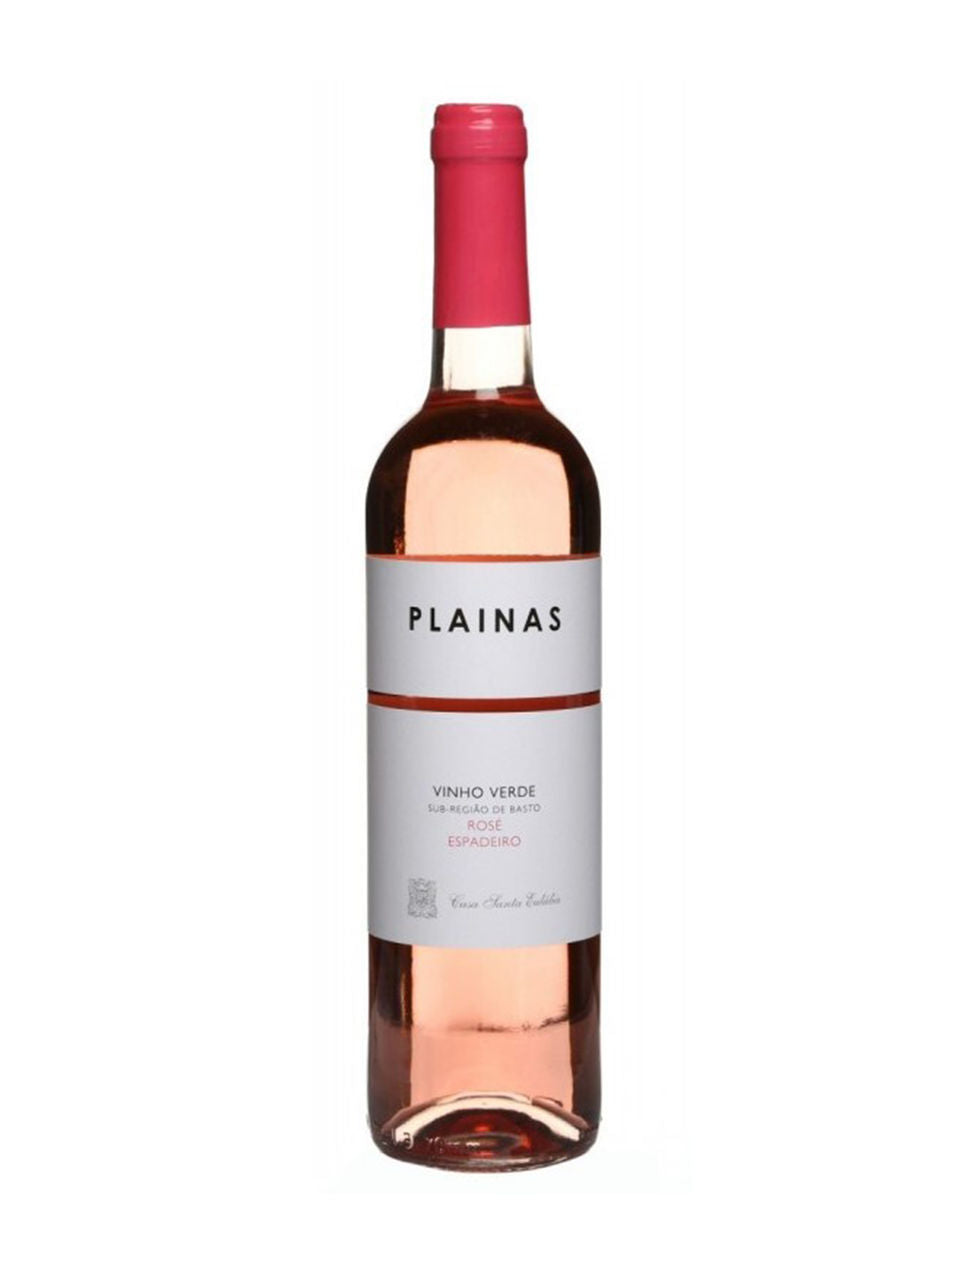 Plainas Vinho Verde Rose 2022 750 ml bottle